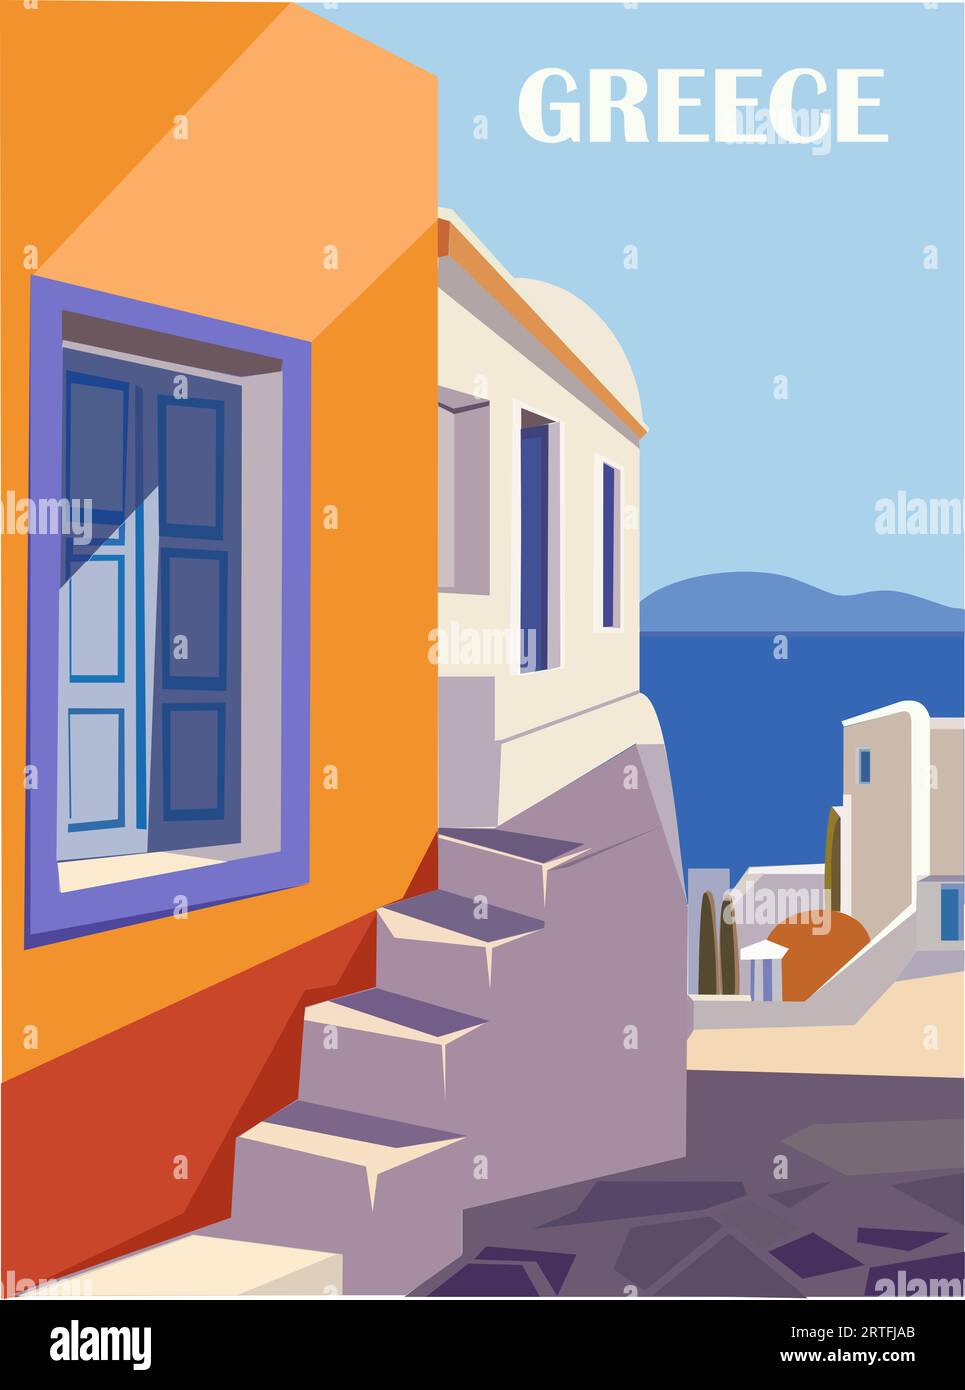 Greece Travel destination Poster dans un style rétro. Illustration de Vecteur